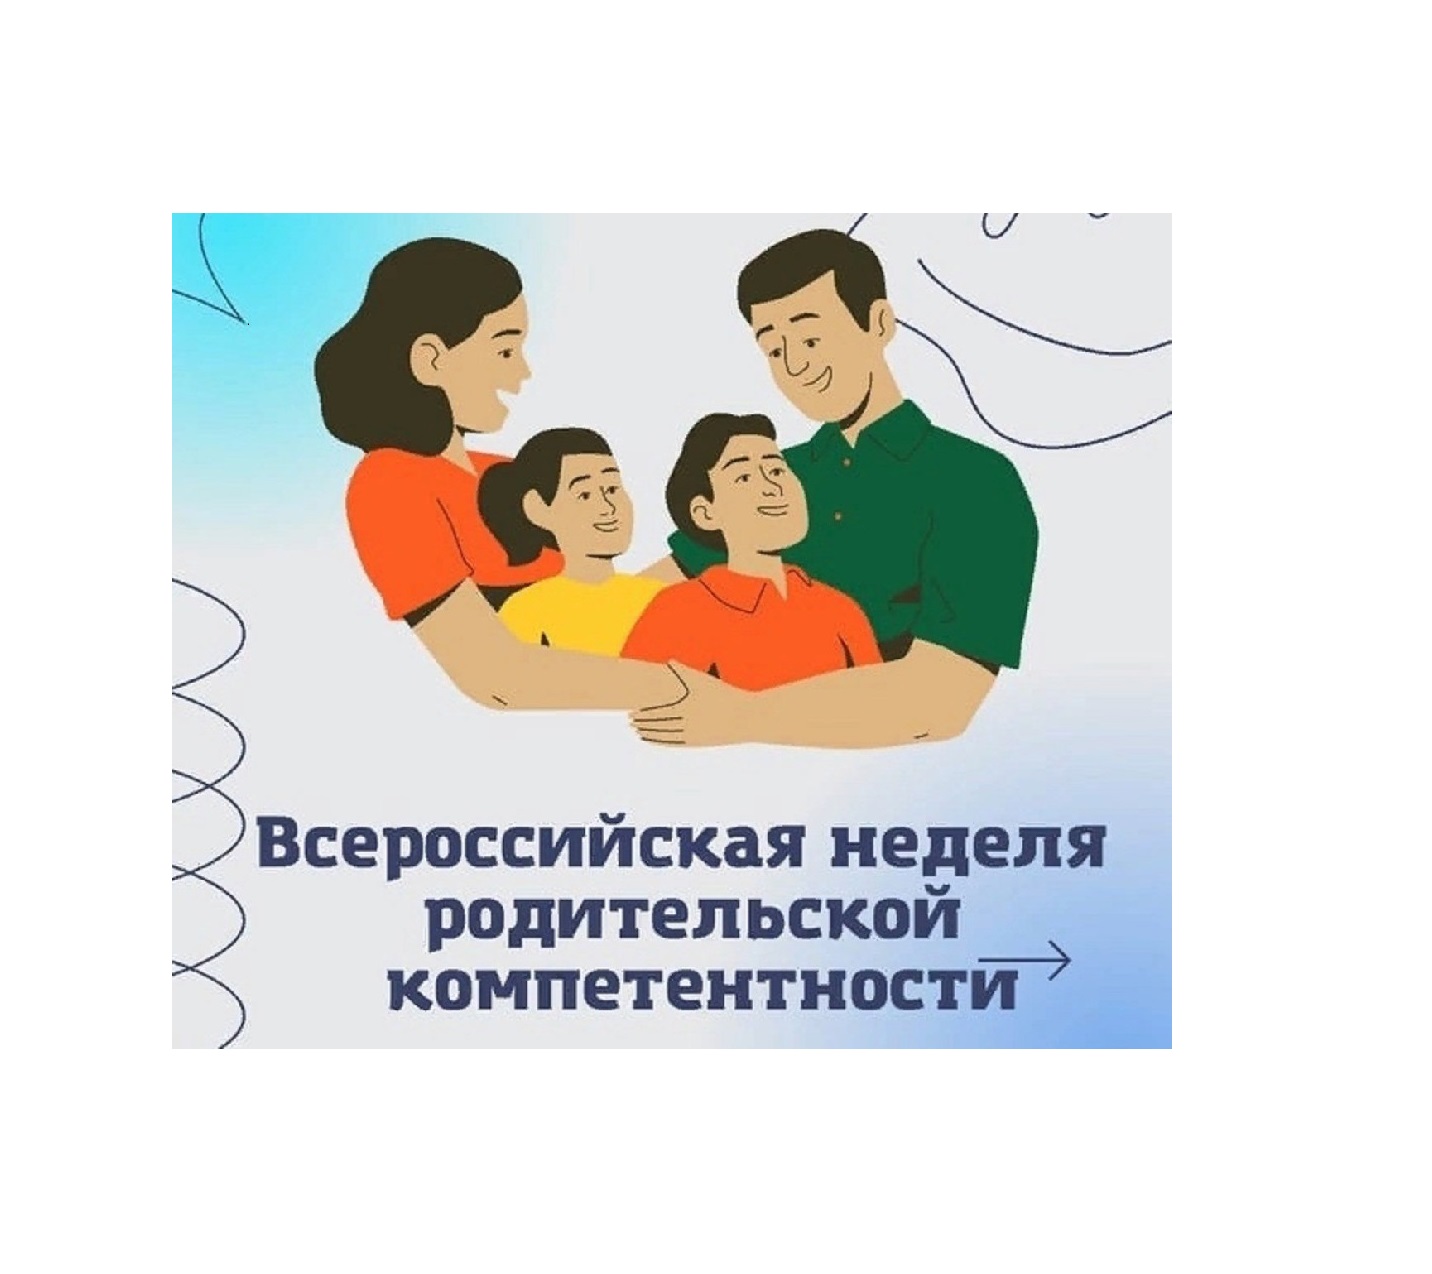 Всероссийская неделя родительской компетентности